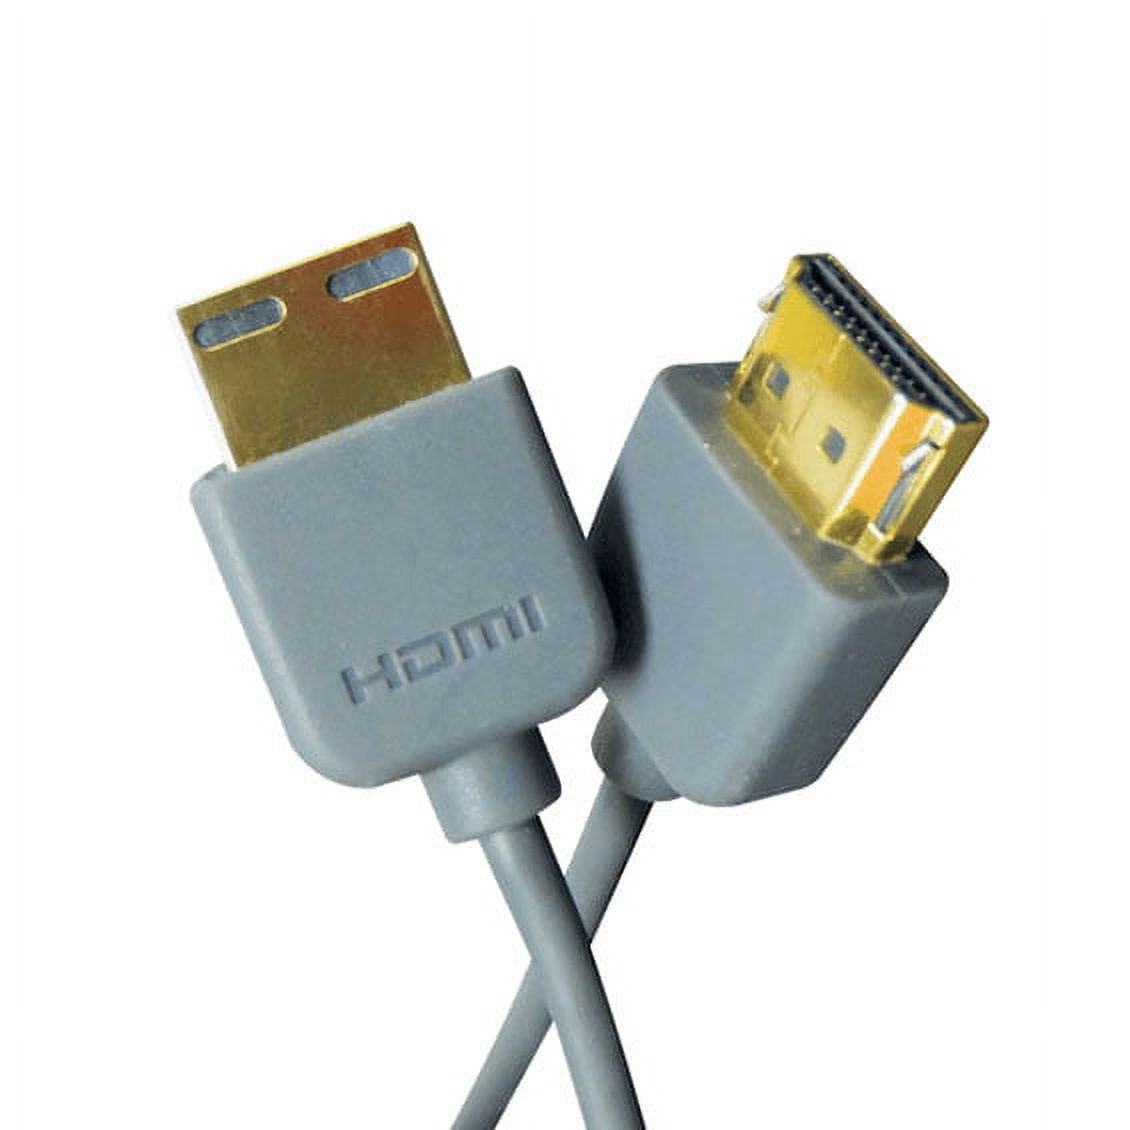 CABLE PREMIUM DE HDMI A MINI HDMI DE 5 METROS ULTRA HD 4K 60HZ NETCOM –  Compukaed